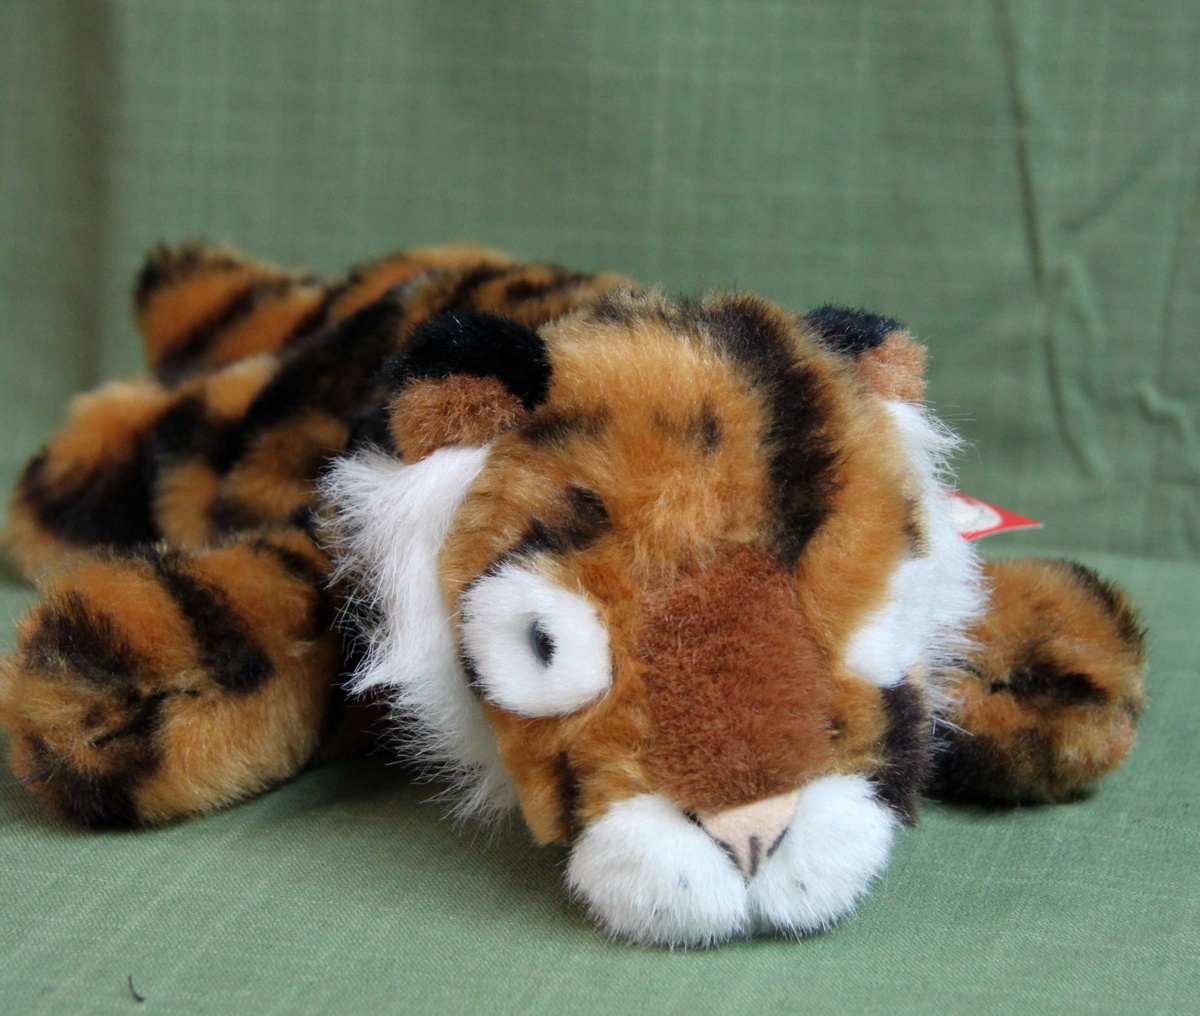 Tiger Teddy-Hermann Hirscheid